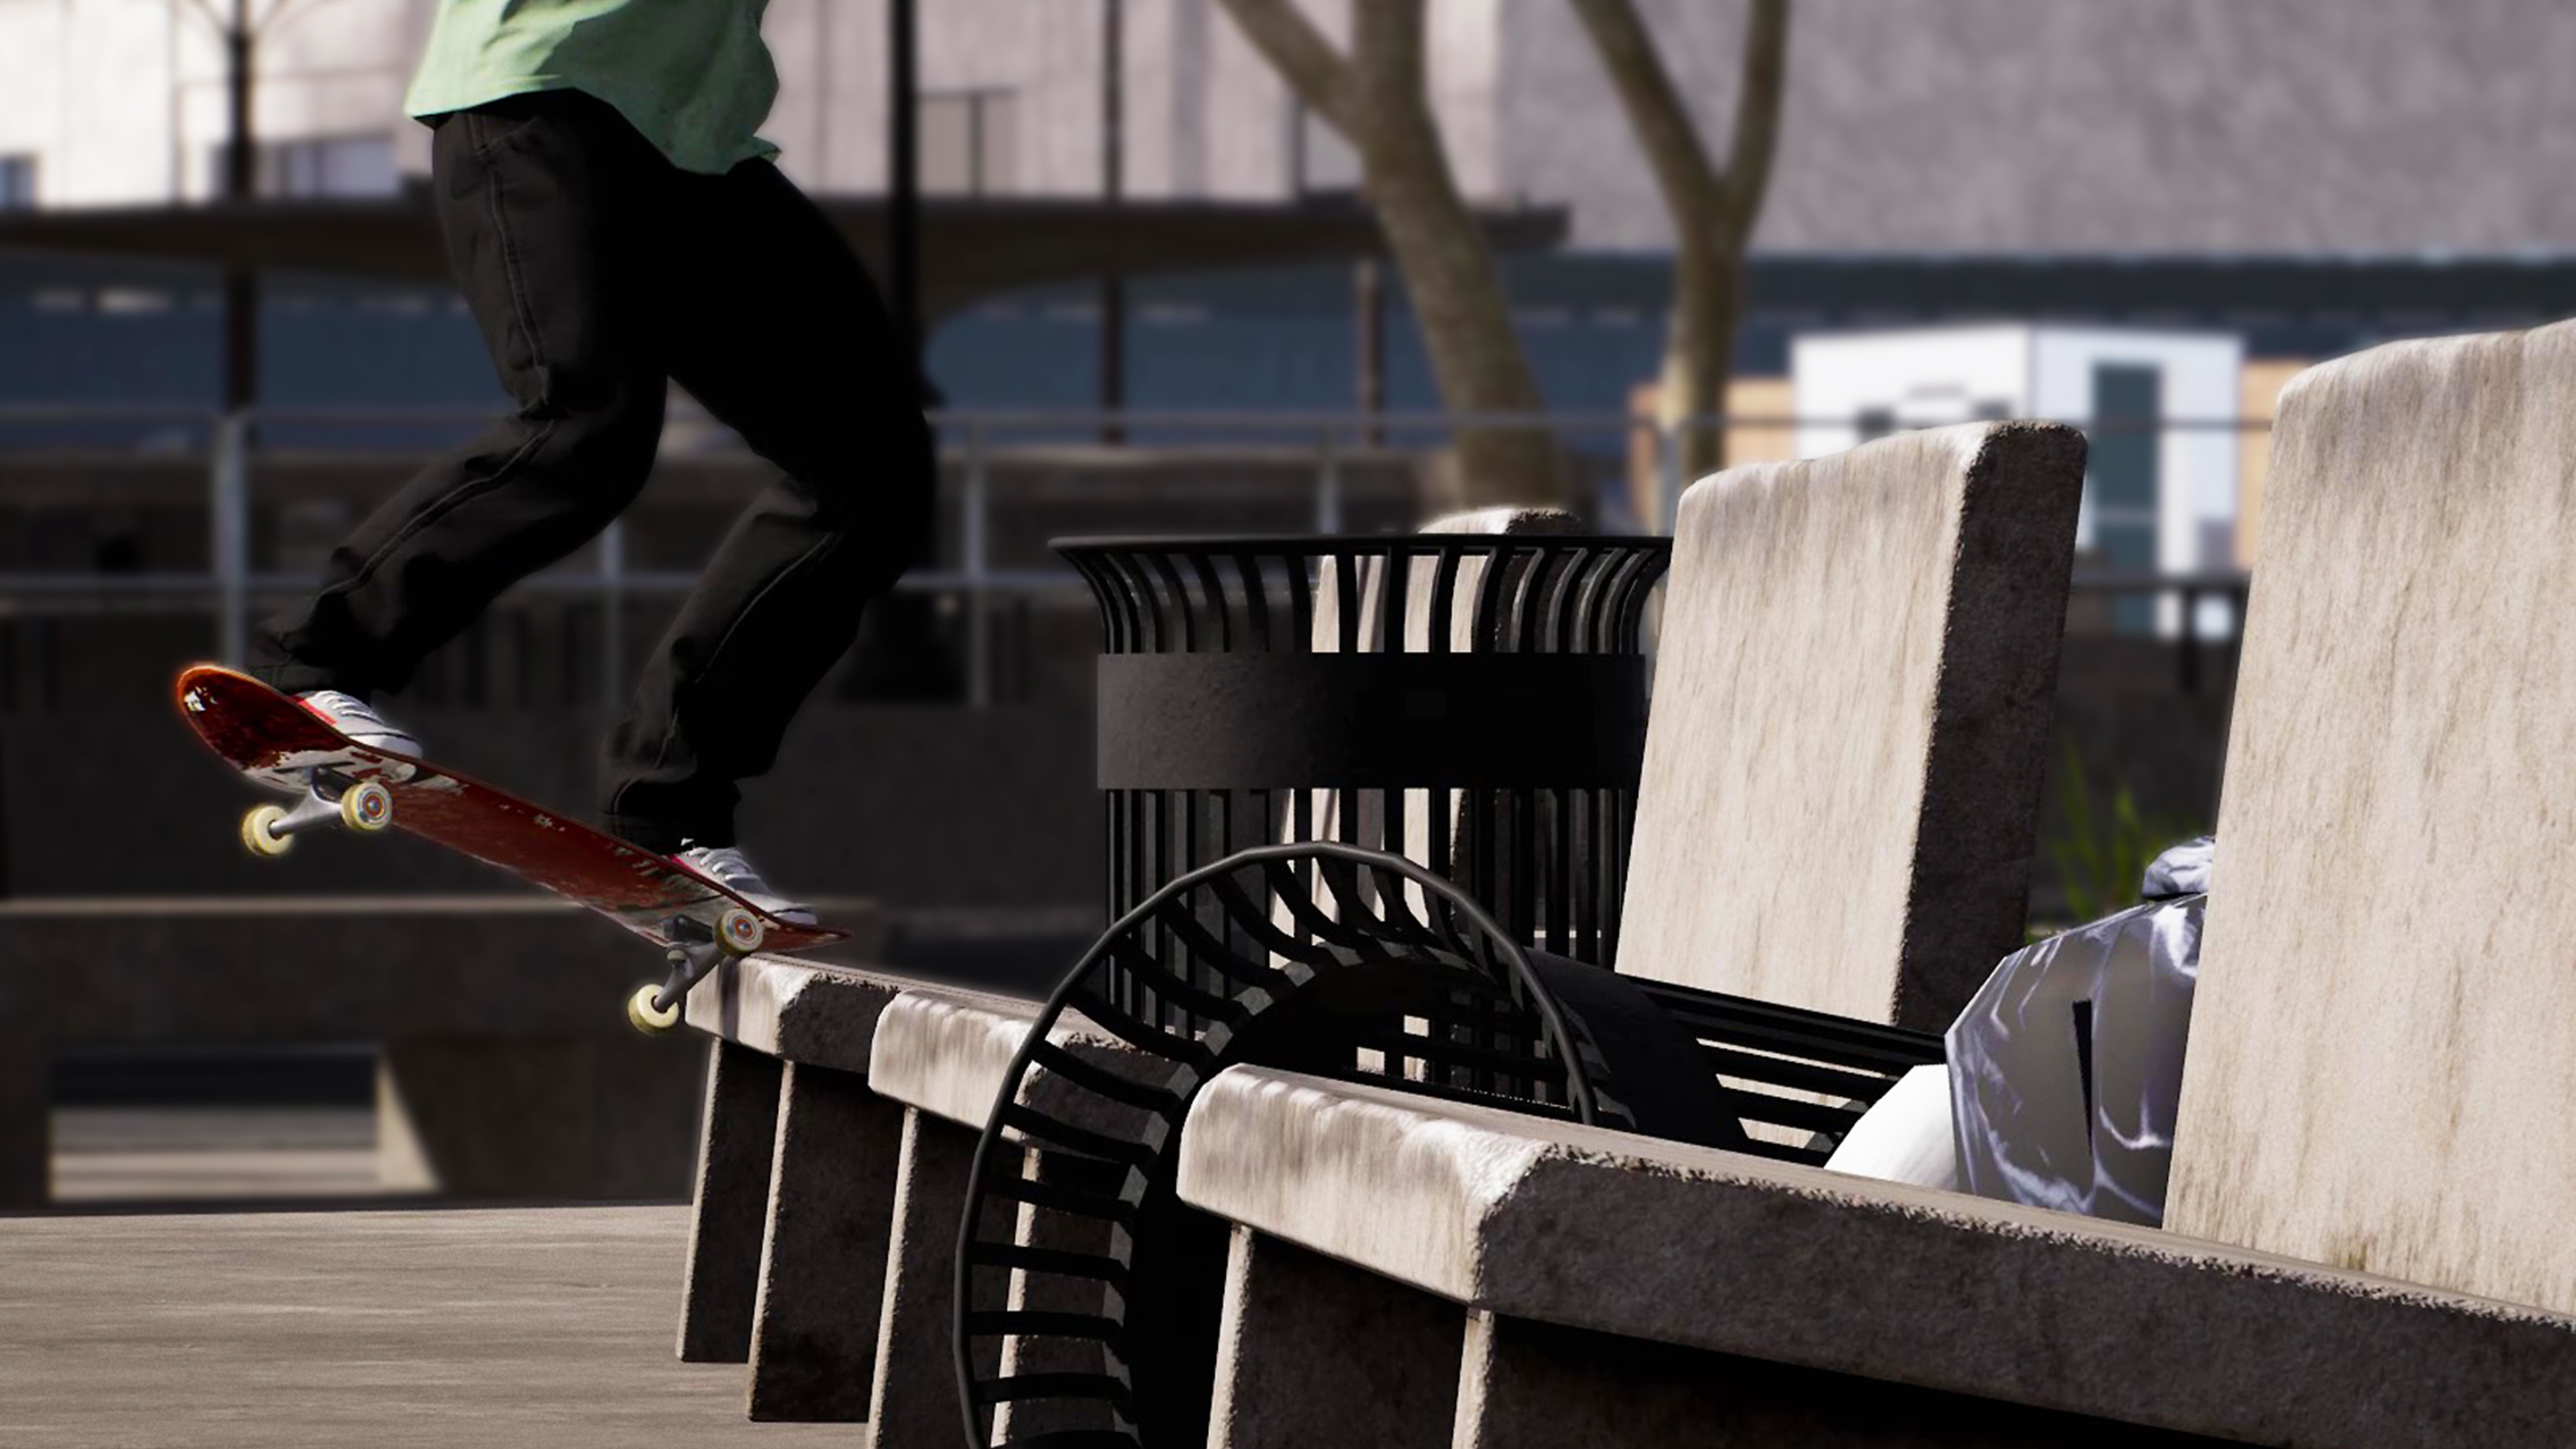 Capture d'écran de Session: Skate Sim - un skateur glissant le long d'un banc